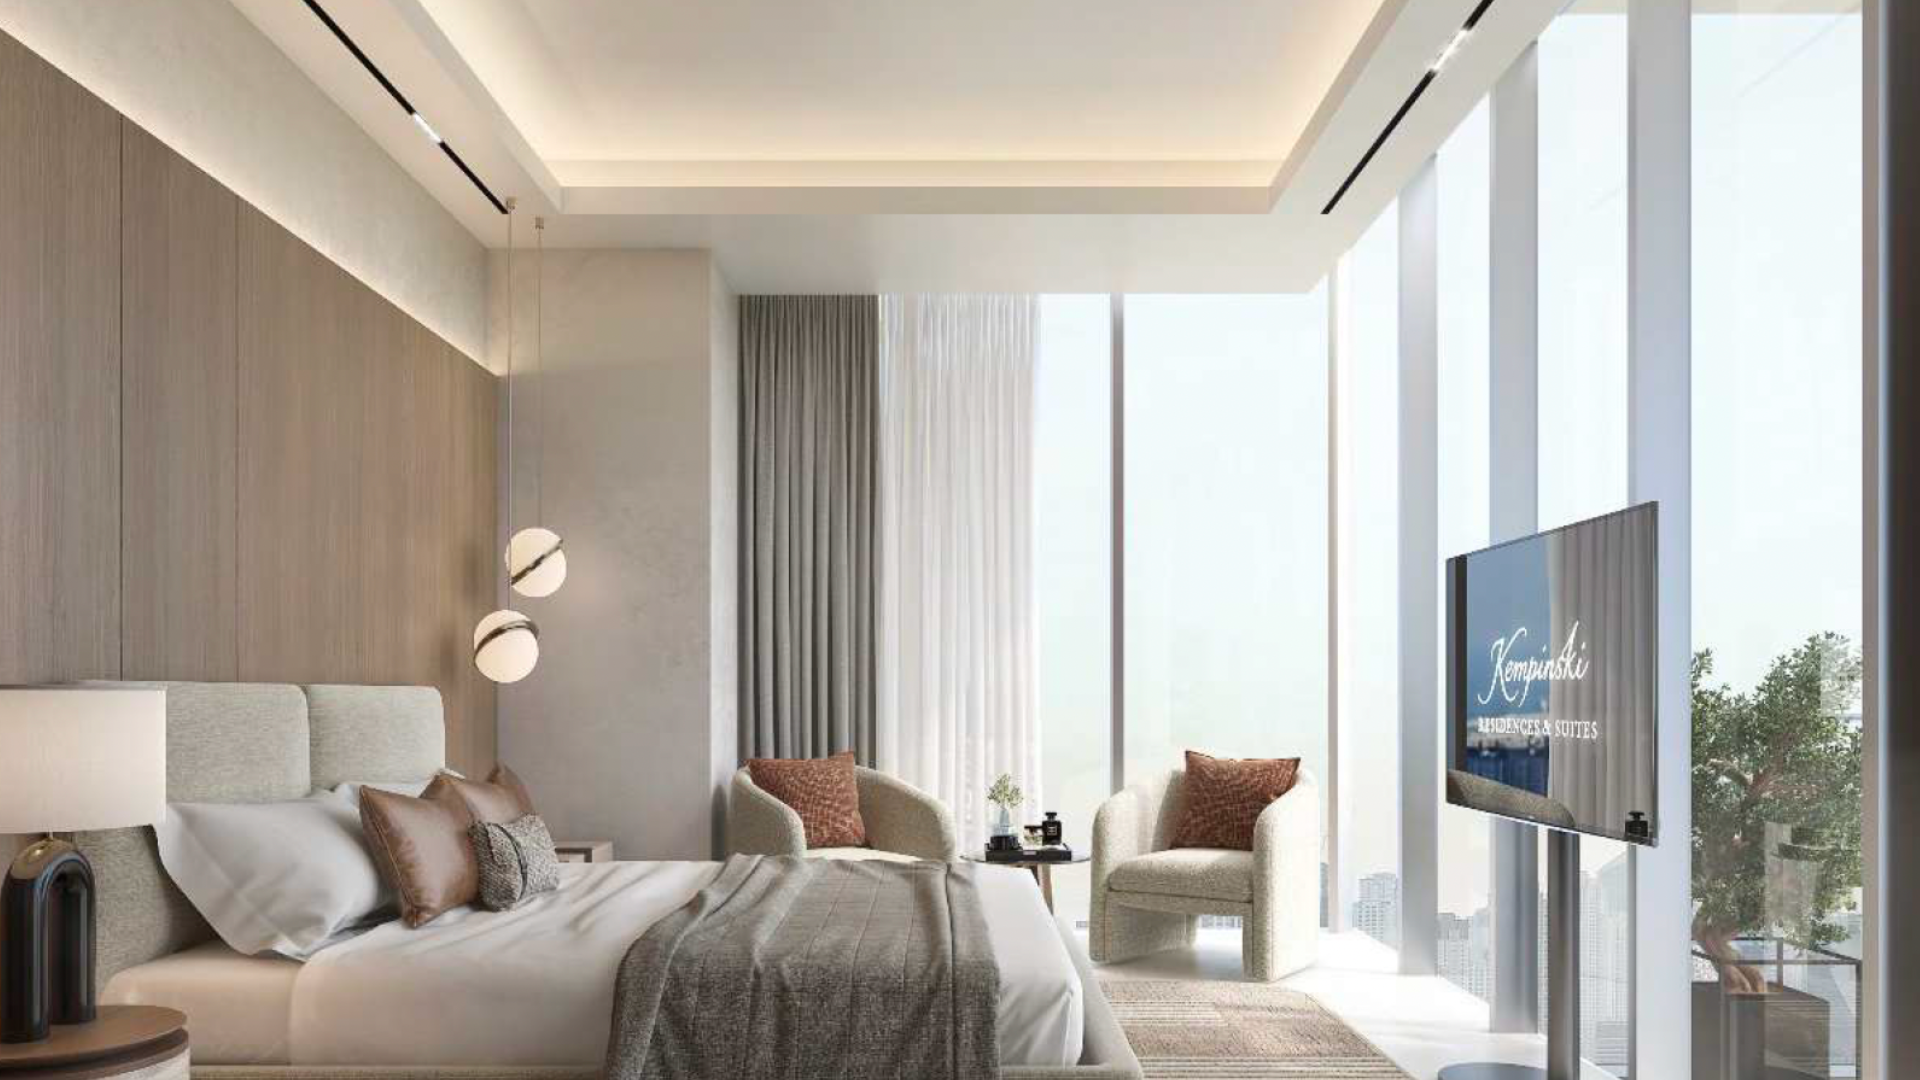 Chambre moderne dans un appartement de Dubaï avec de grandes fenêtres, un lit king-size, des panneaux en bois, des suspensions et une télévision murale. La pièce dégage une ambiance sobre et luxueuse avec une palette de couleurs neutres.